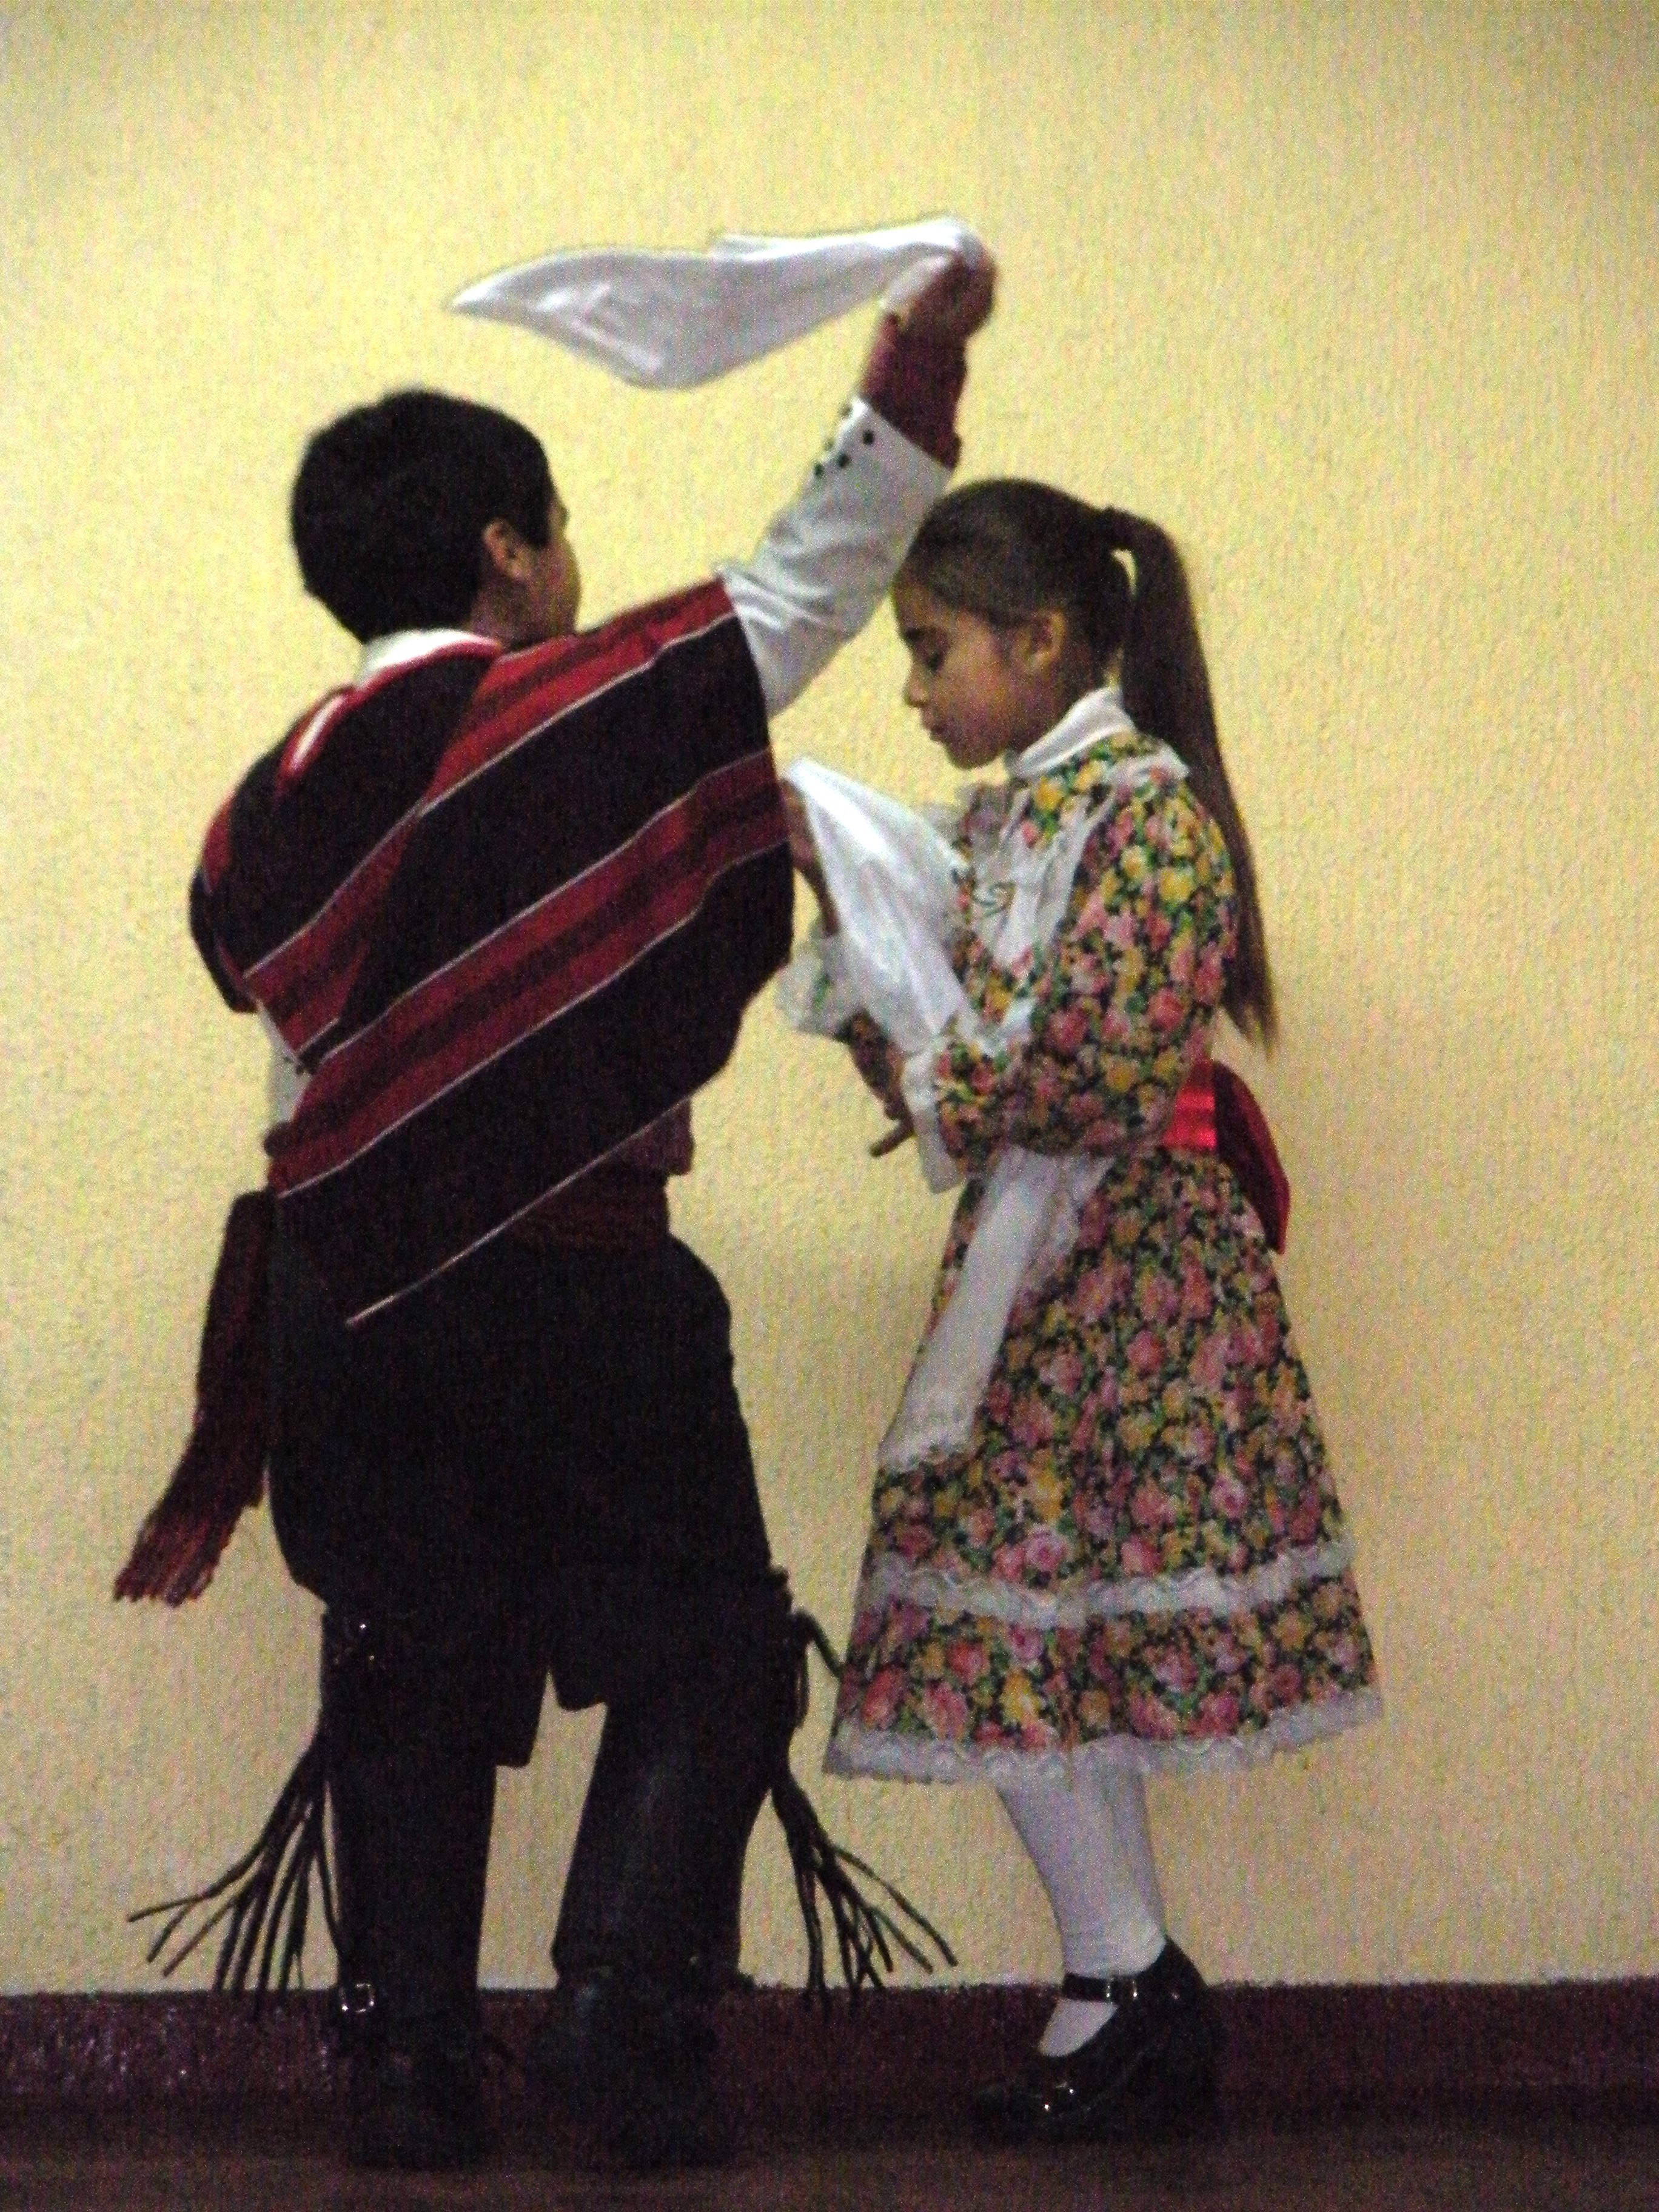 Children dancing 